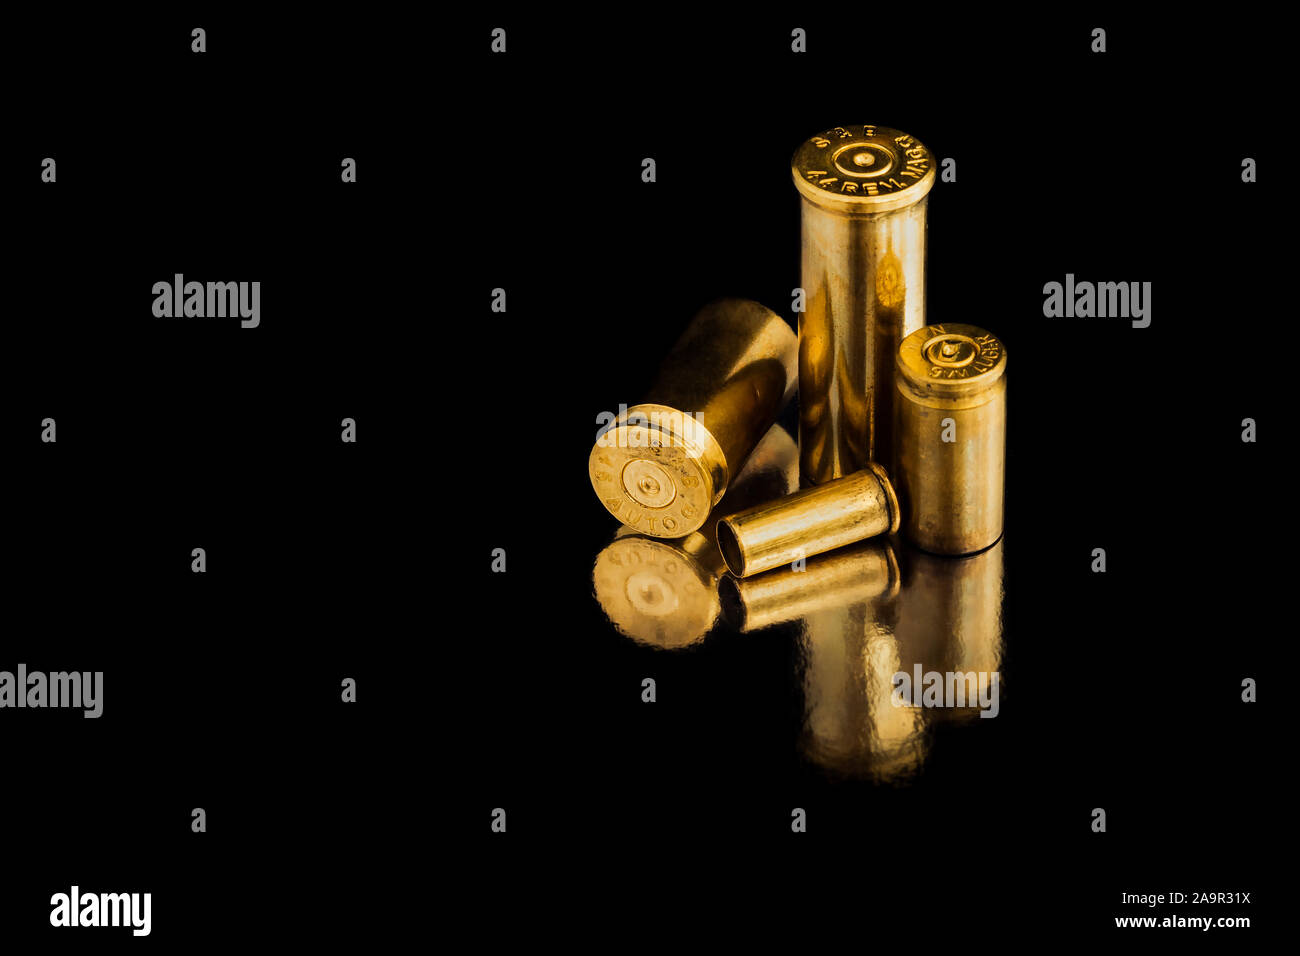 Comparaison de différentes tailles d'utilisé des obus sur une balle de fond isolé noir avec la réflexion d'une tin de table. Perception de la qualité Banque D'Images